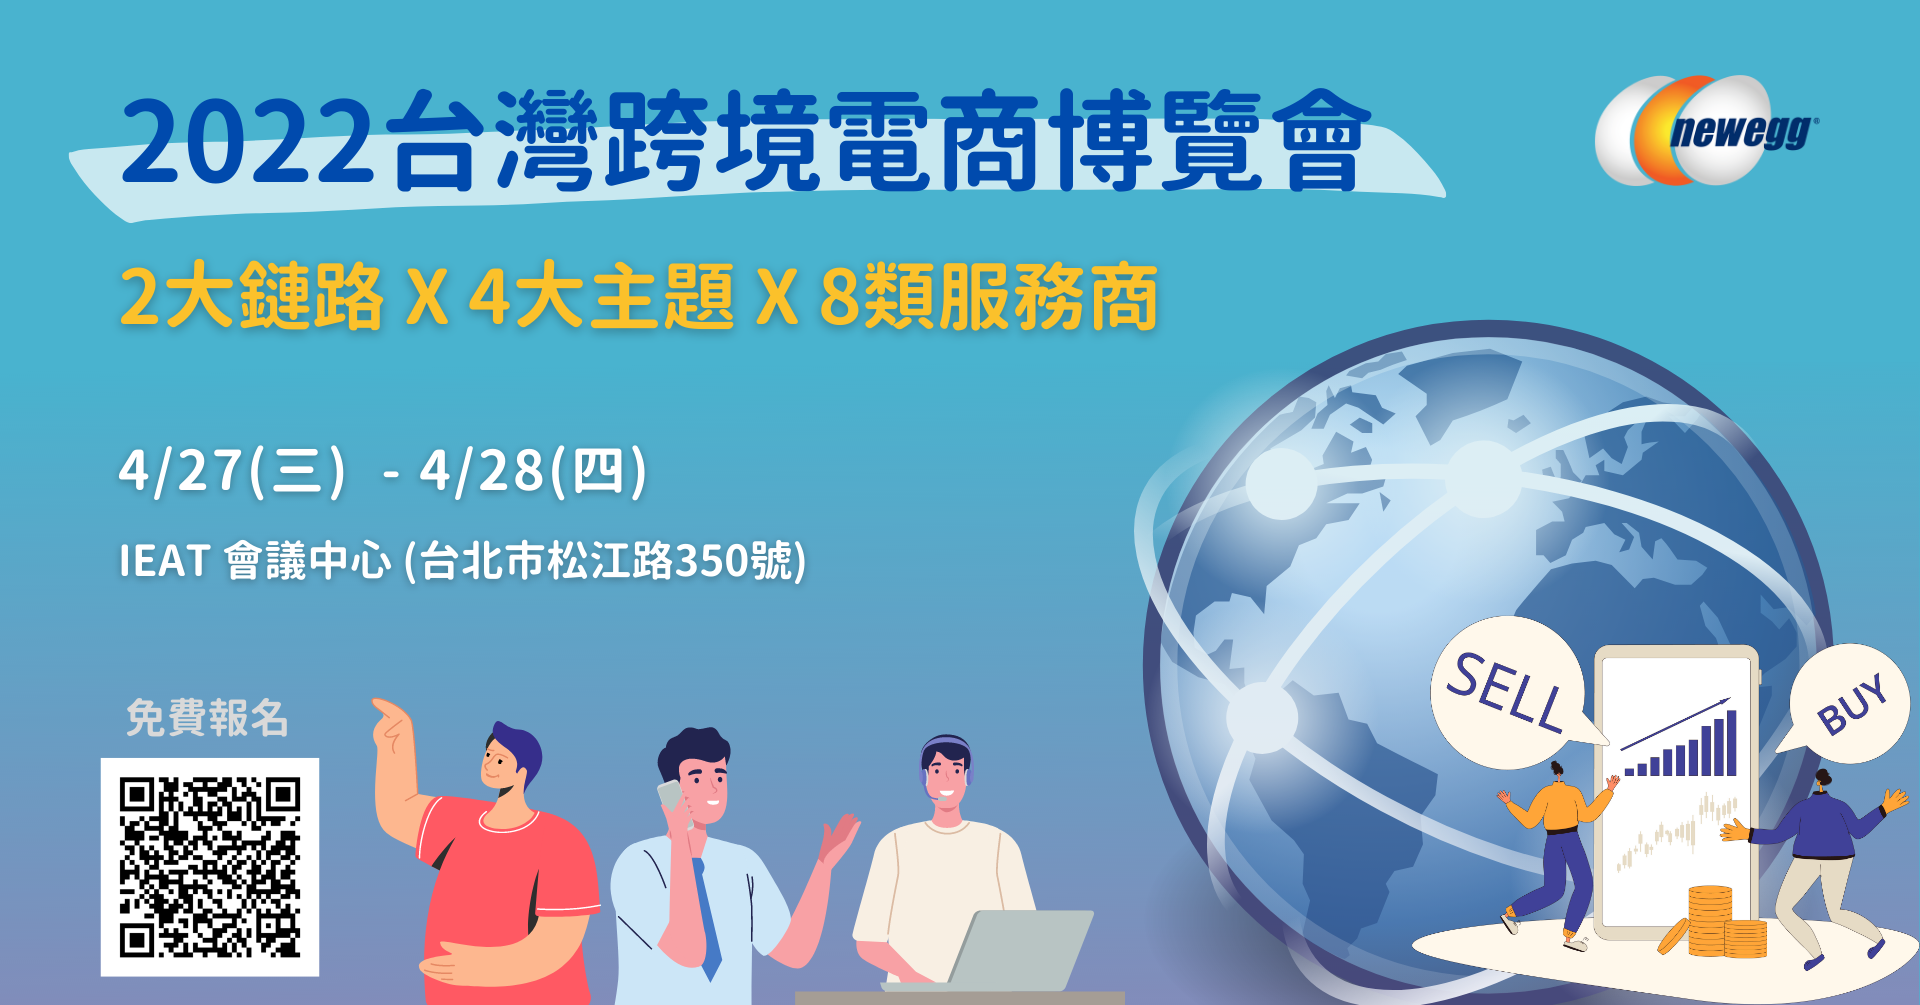 2022/4/27(三)-4/28(四)【2022台灣跨境電商博覽會】